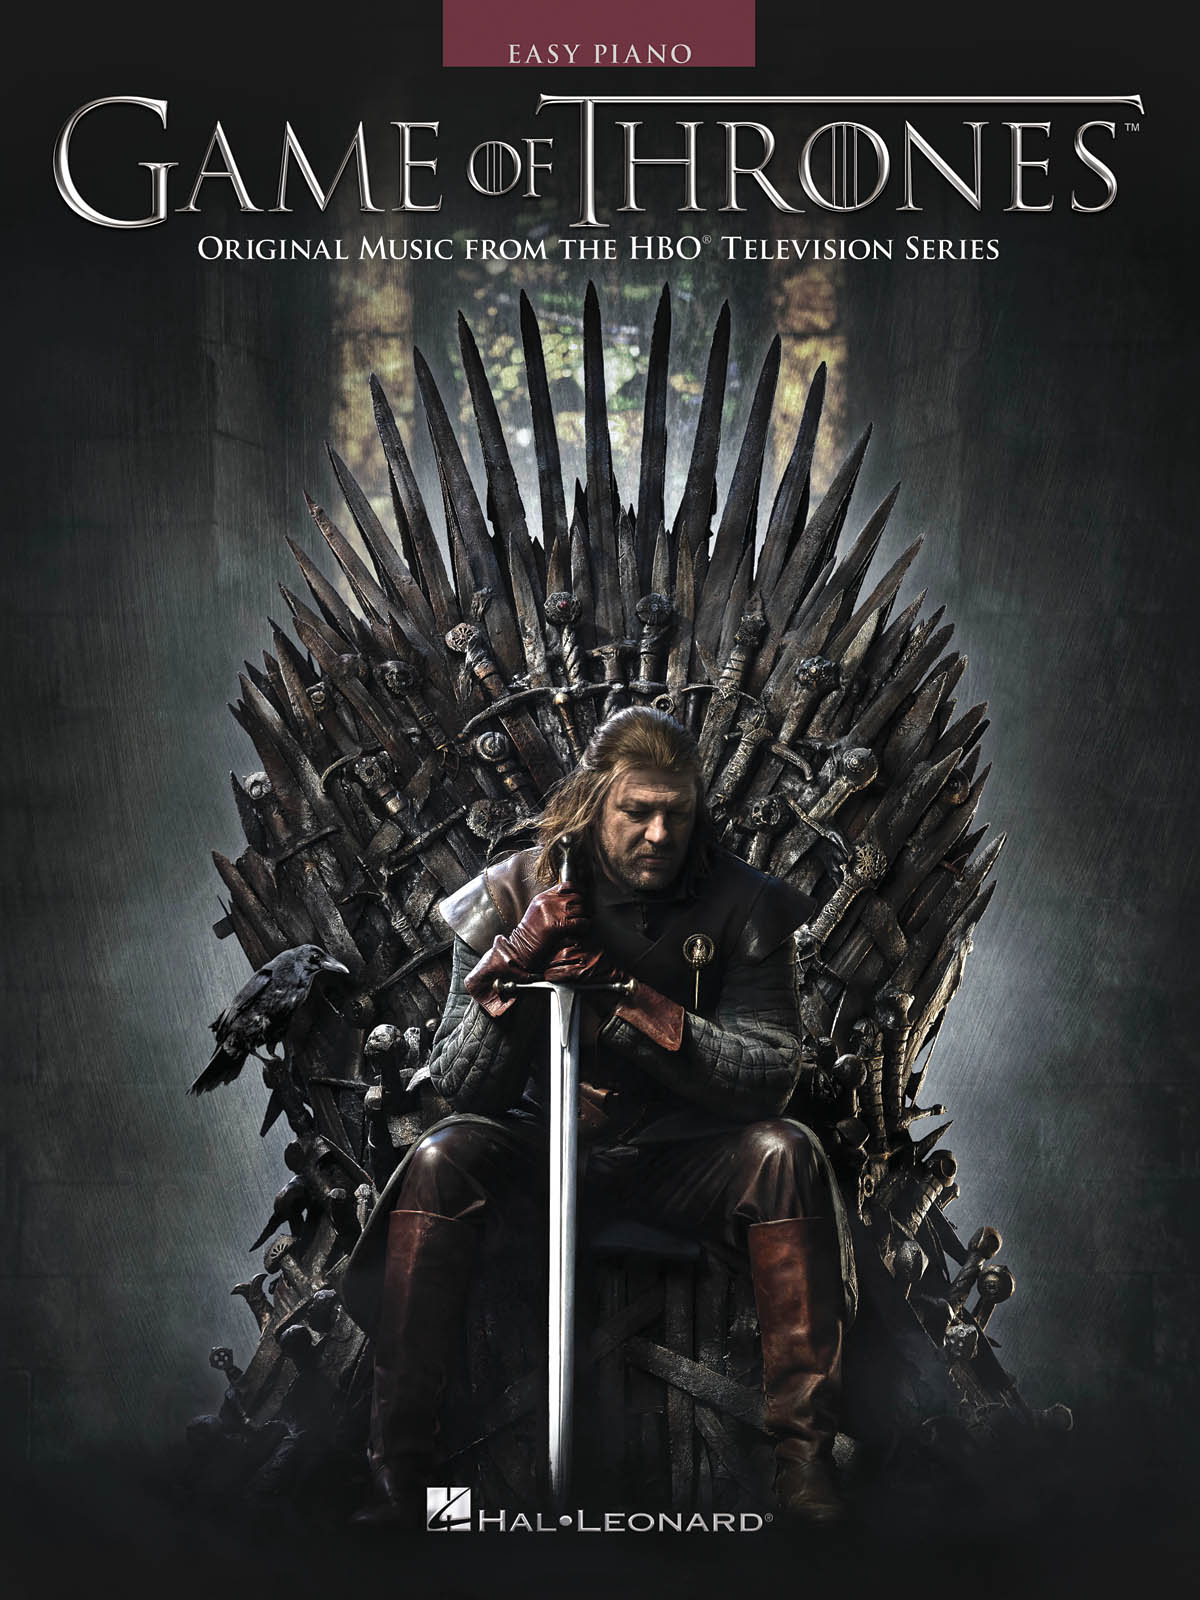 Game of Thrones - Original Music from the HBO Television Series - jednoduché písně pro začátečníky